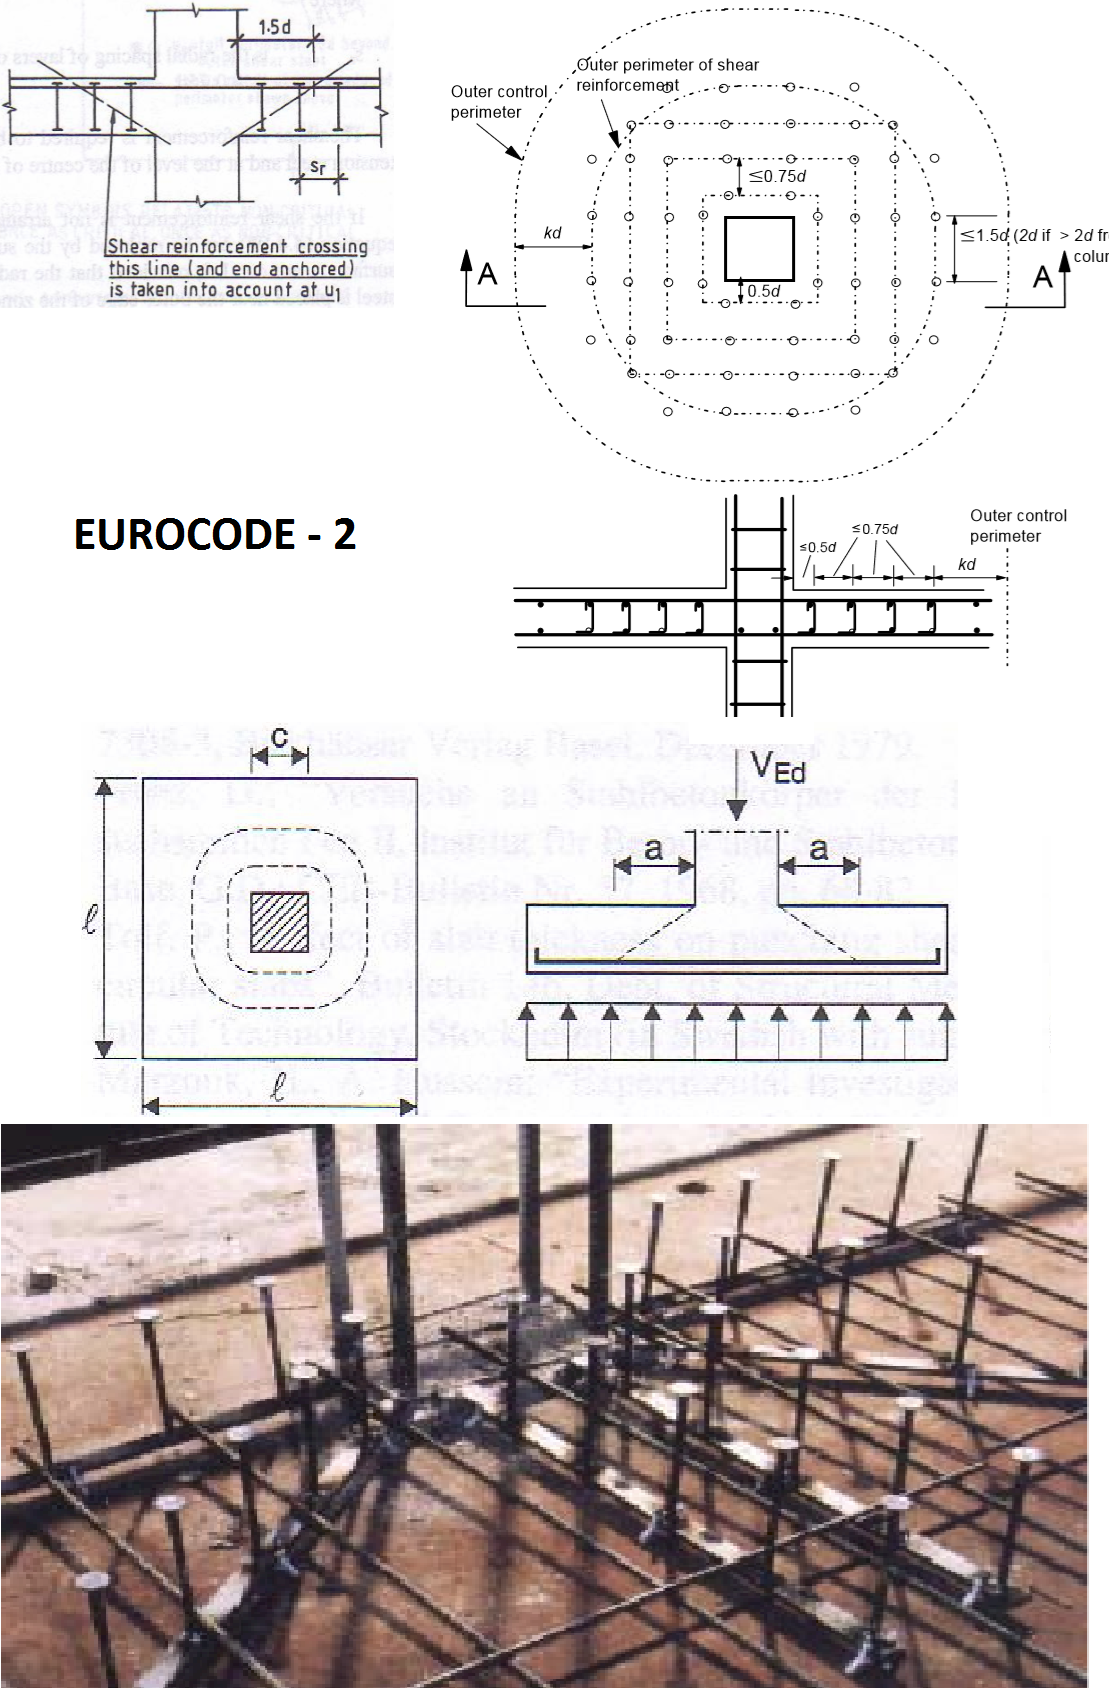 eurocode - 2 zımbalama donatısı ile ilgili bazı gösterimler